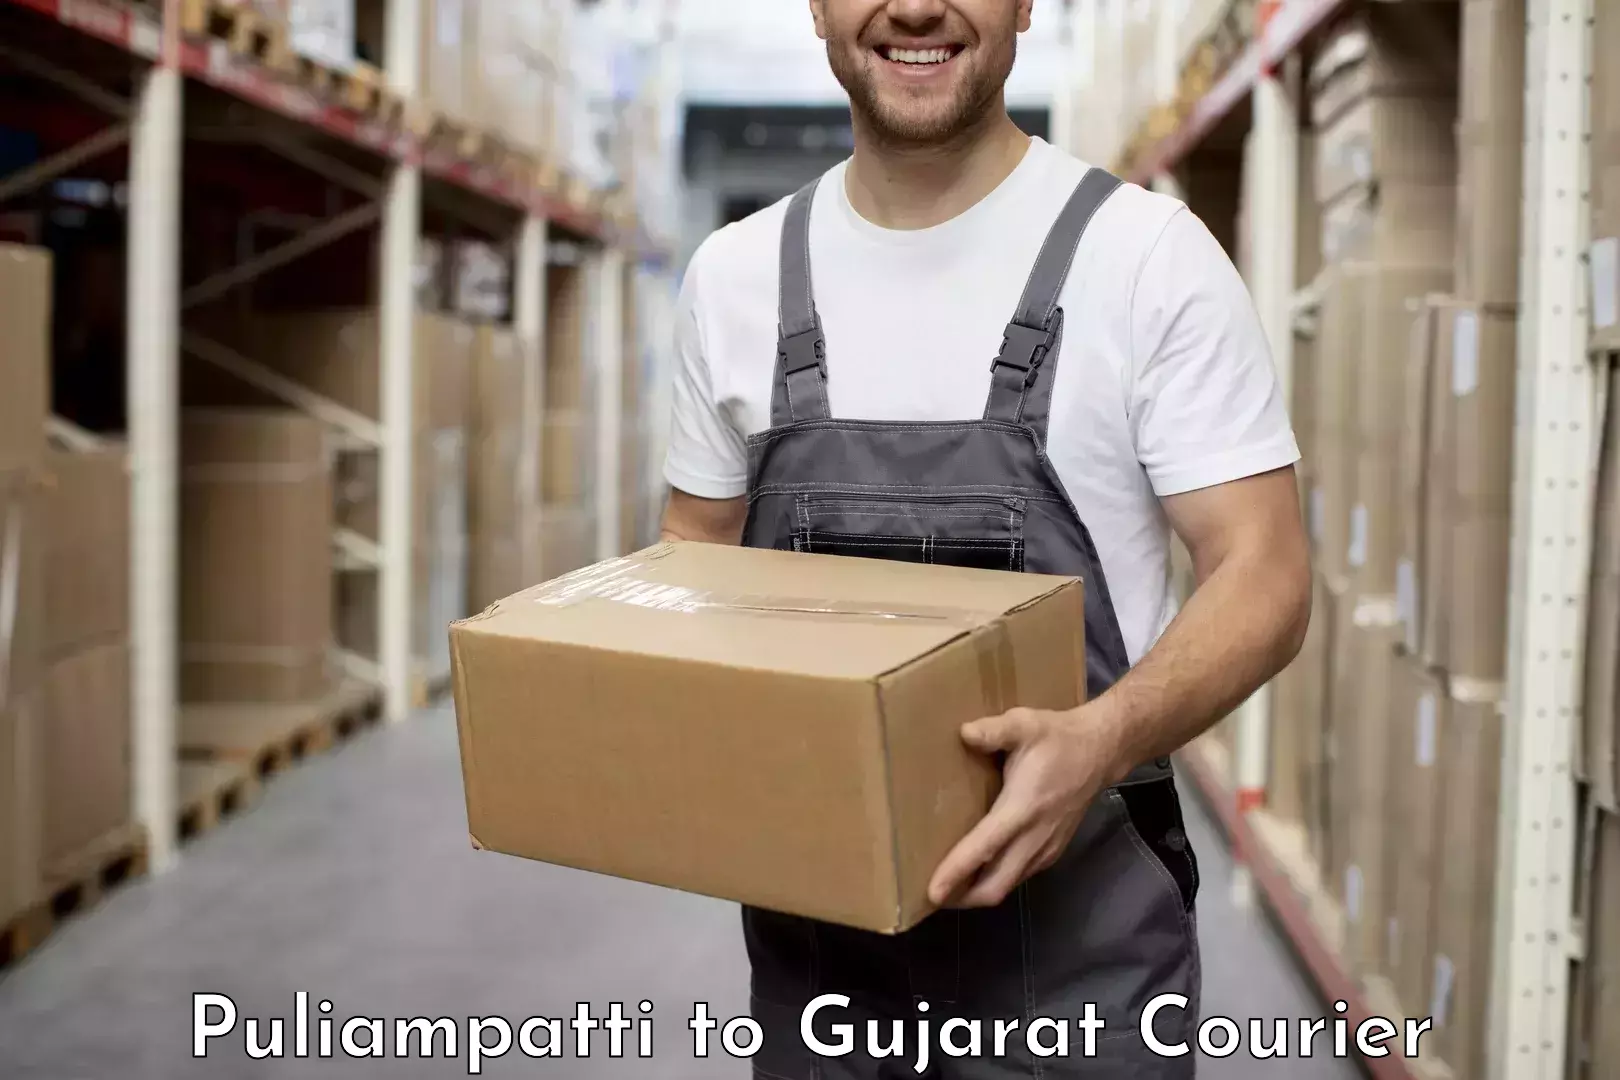 Customer-focused courier Puliampatti to Unjha